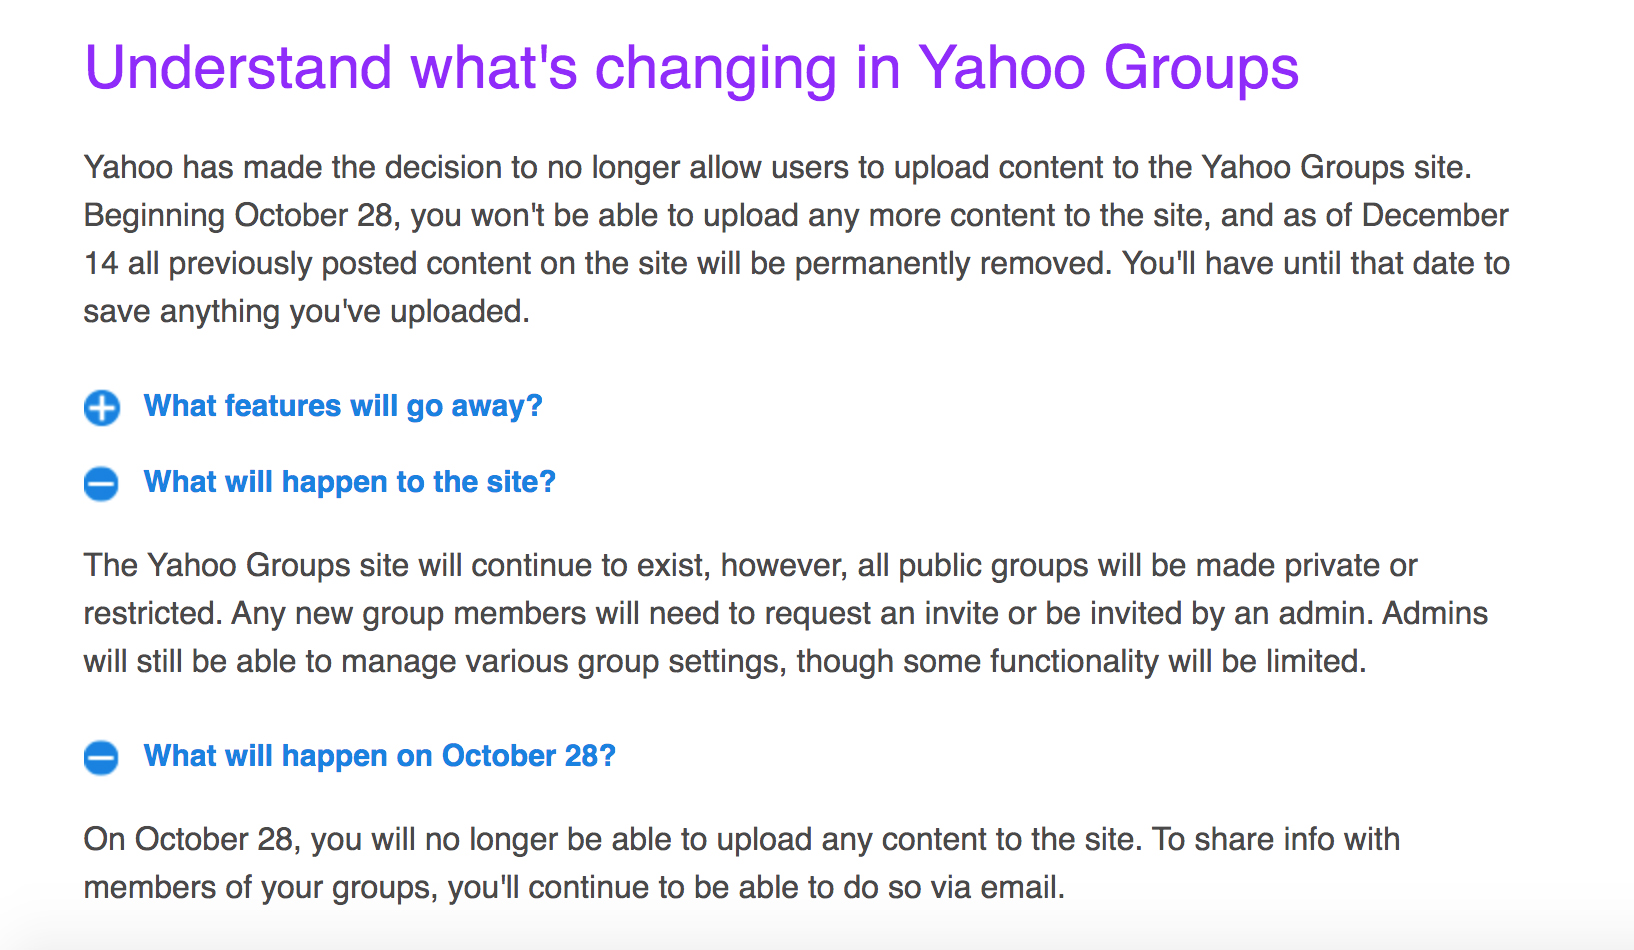 雅虎宣布逐渐关闭群组网站，12月14日后删除所有上传内容